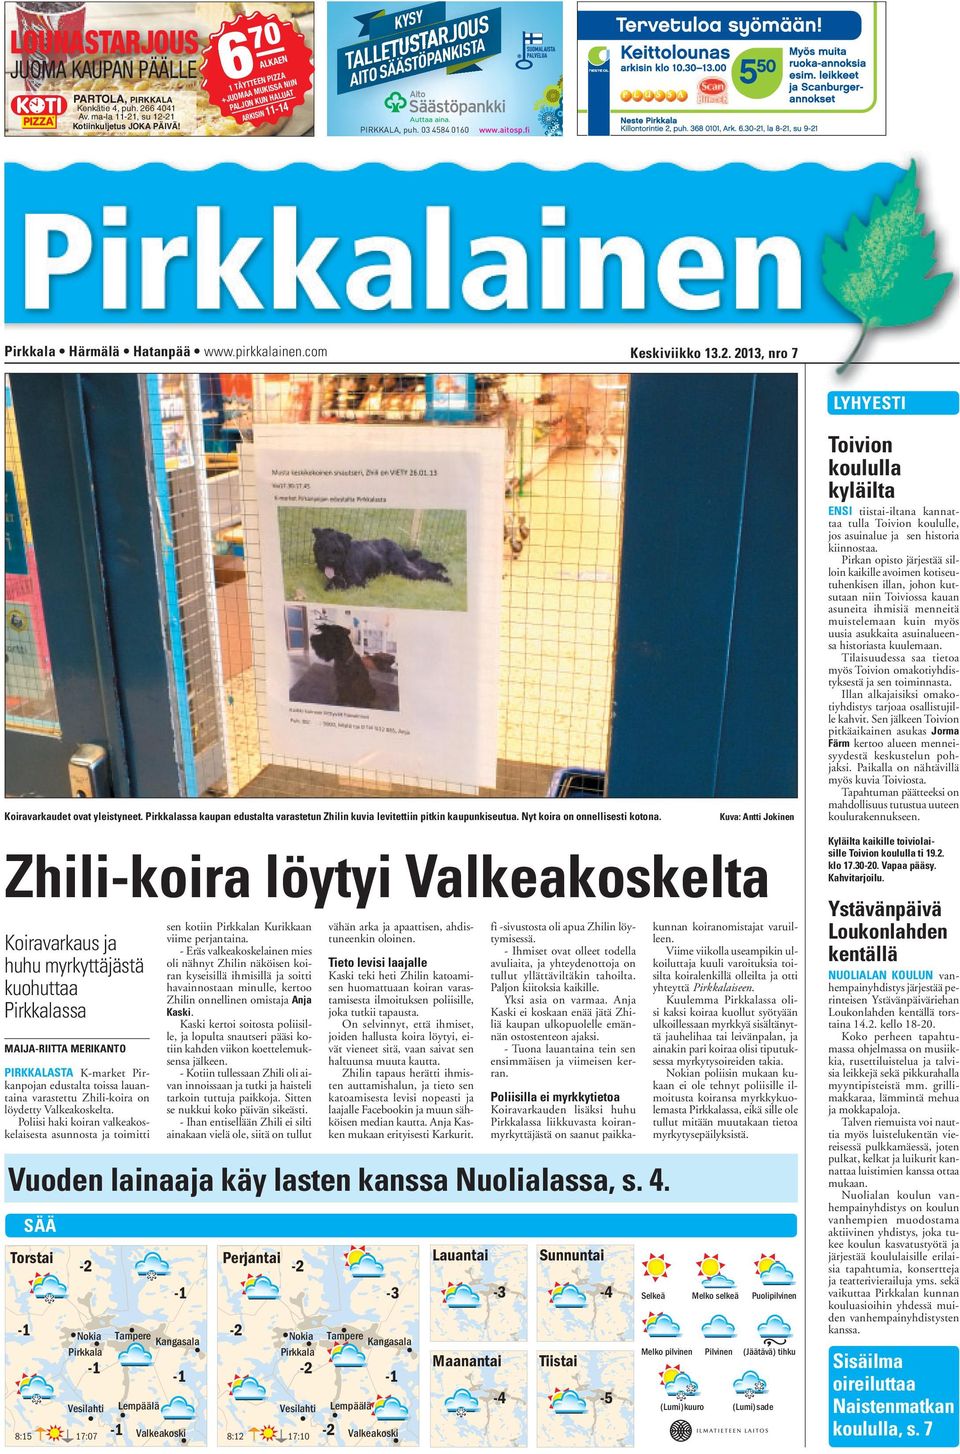 pirkkalainen.com Keskiviikko 13.2. 2013, nro 7 LYHYESTI Koiravarkaudet ovat yleistyneet. Pirkkalassa kaupan edustalta varastetun Zhilin kuvia levitettiin pitkin kaupunkiseutua.